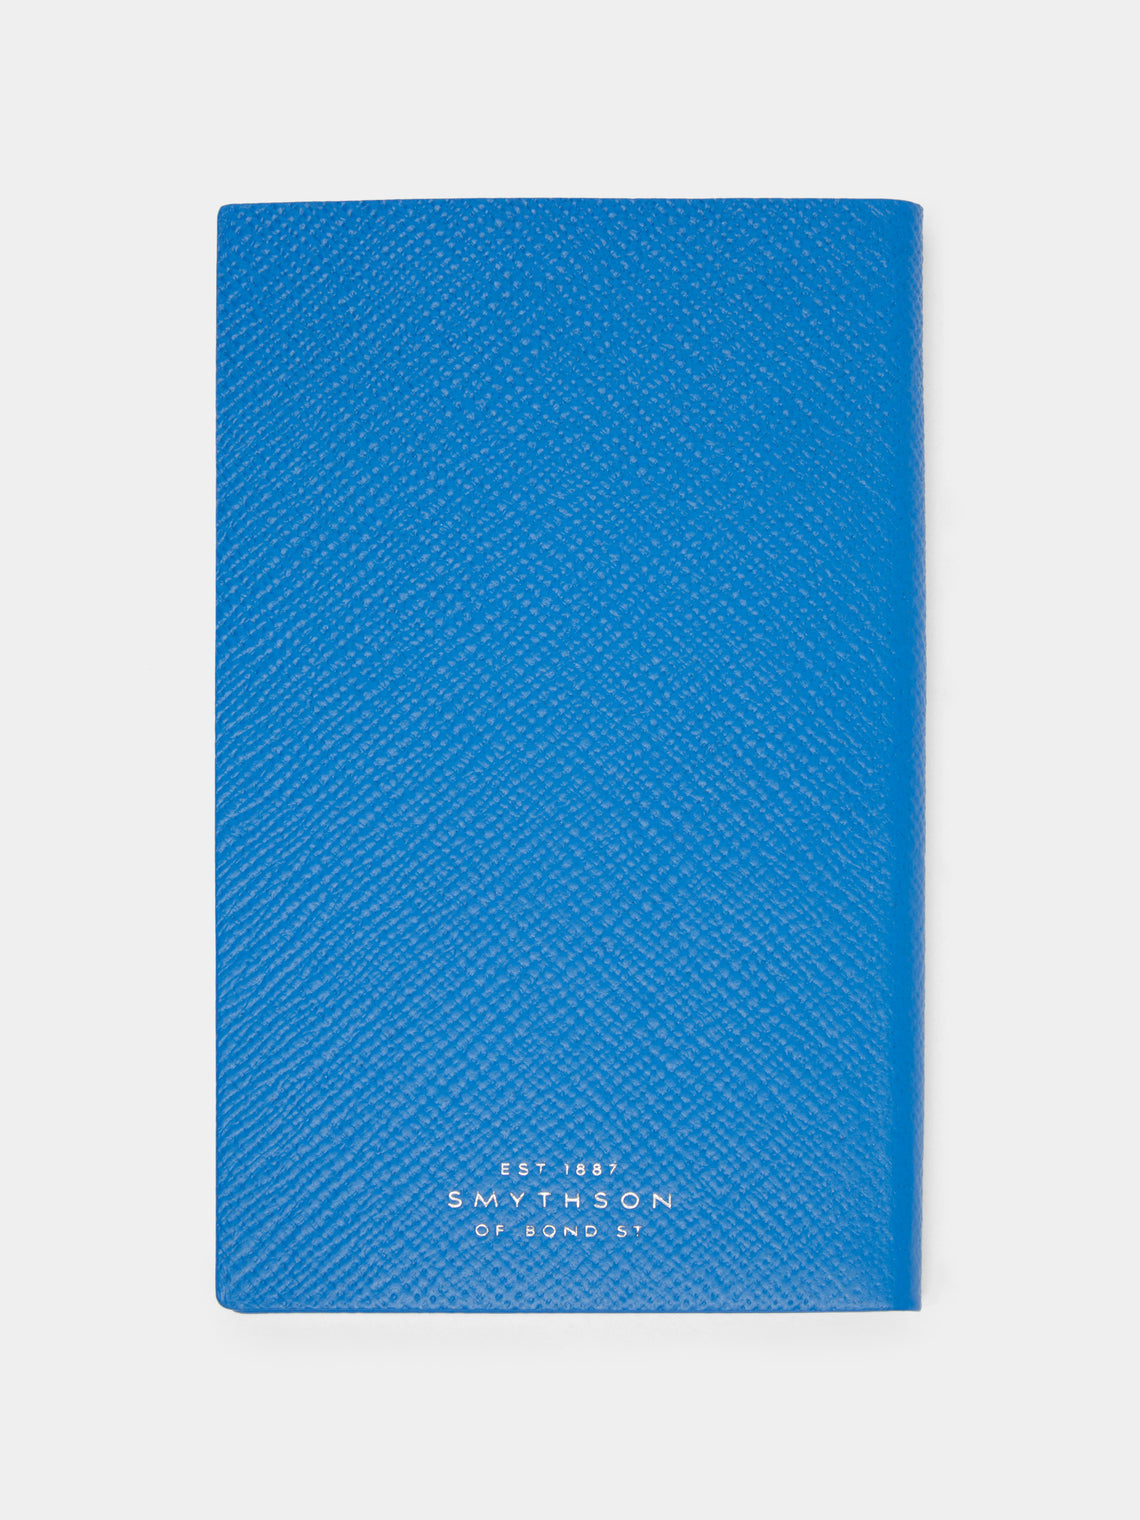 Smythson - Panama Leather Notebook - Blue - ABASK